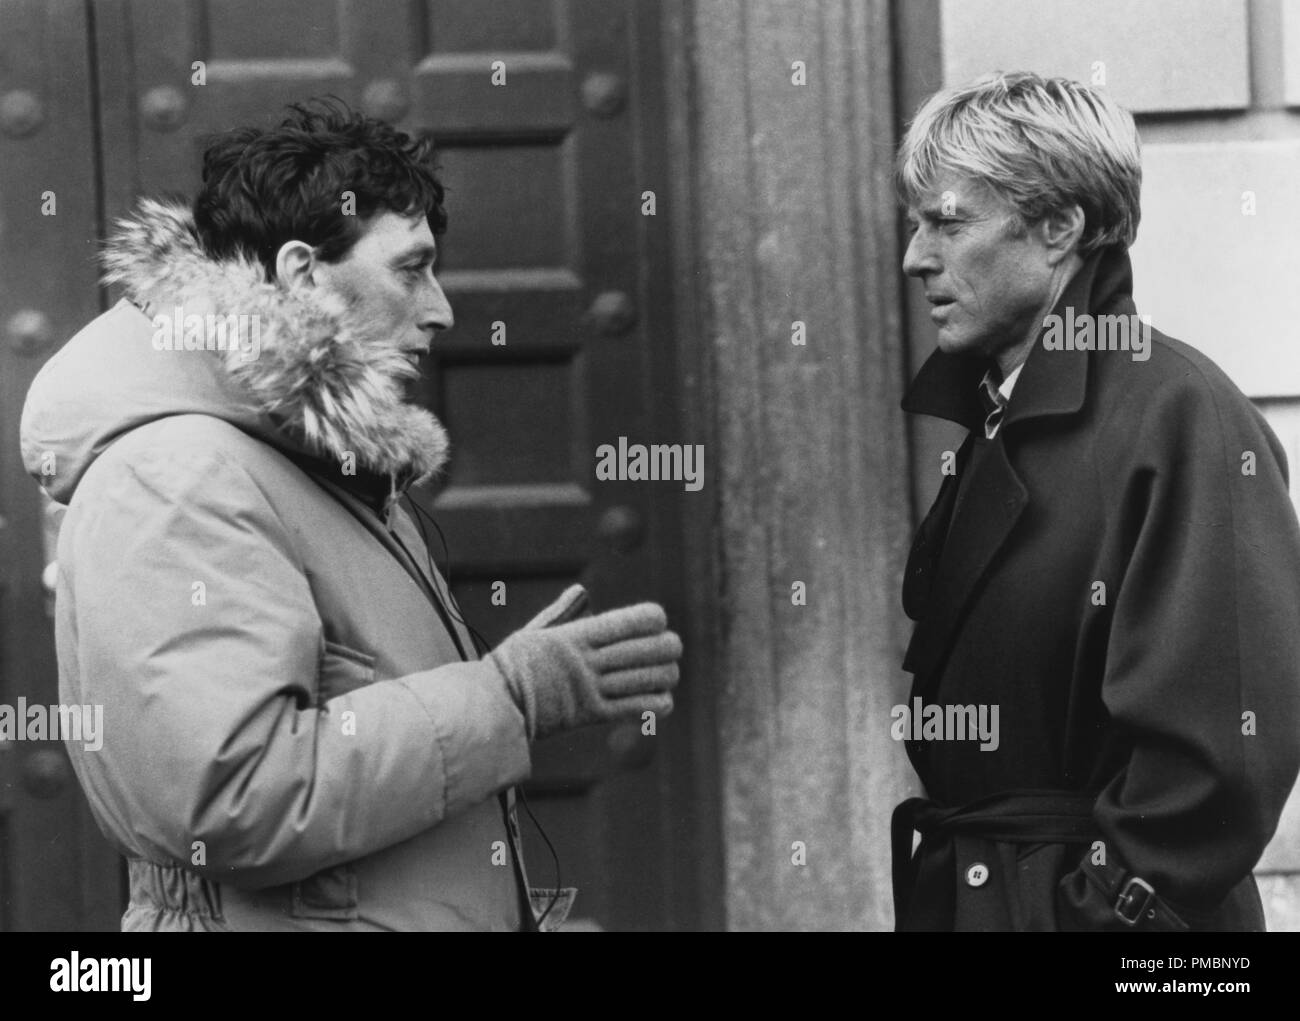 Regisseur Ivan Reitman und Robert Redford am Set von "Legal Eagles", 1986, Universal Pictures Datei Referenz # 32603 135 THA Stockfoto